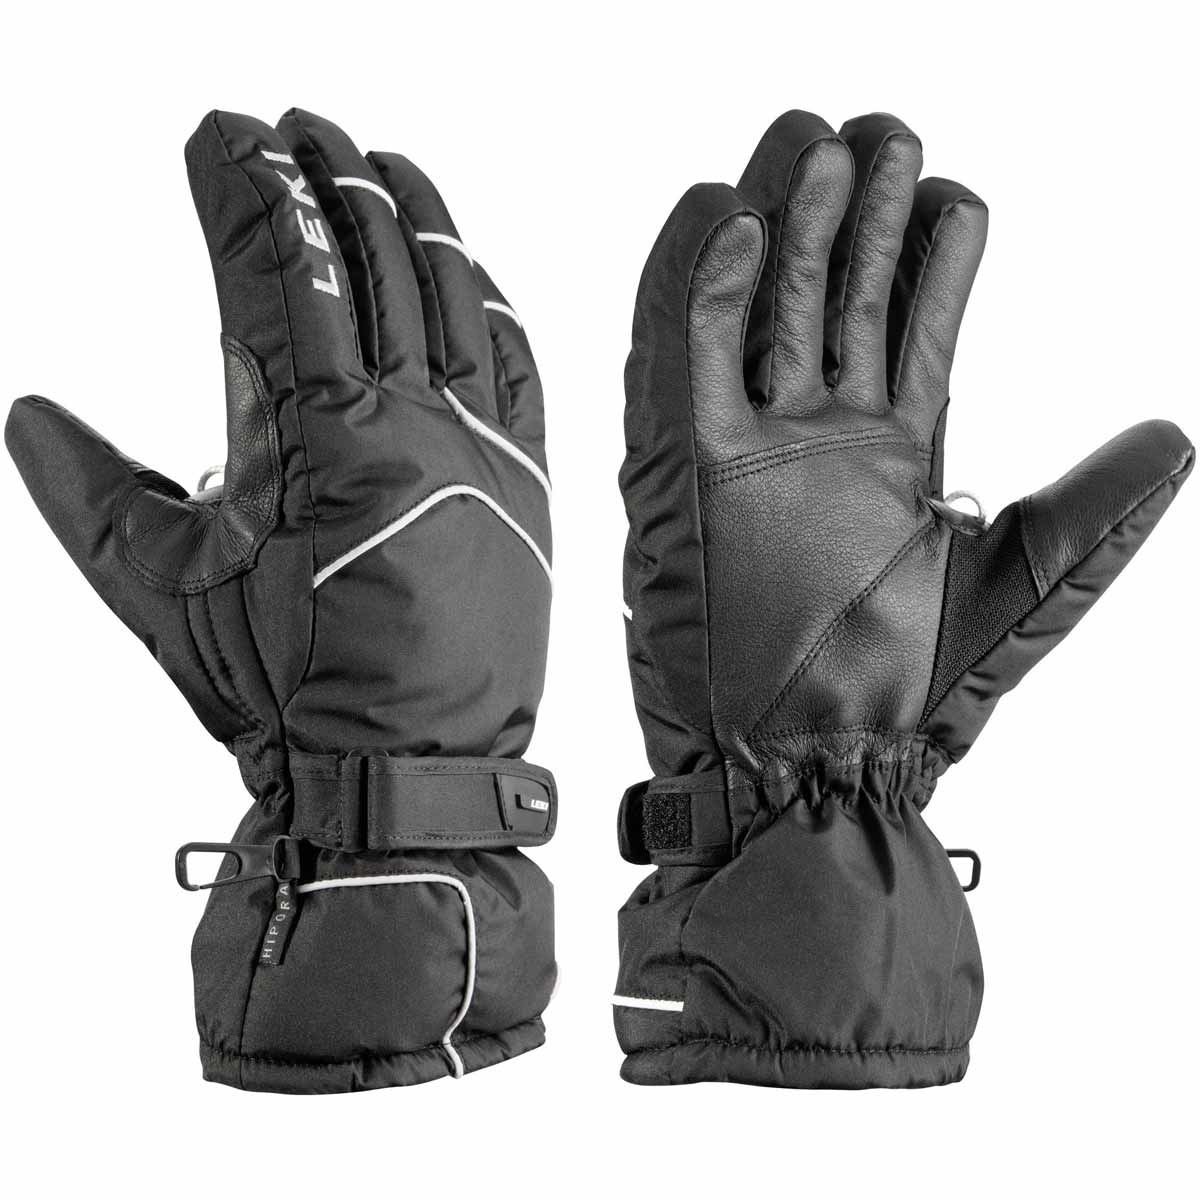 SCARP S - Men's ski gloves